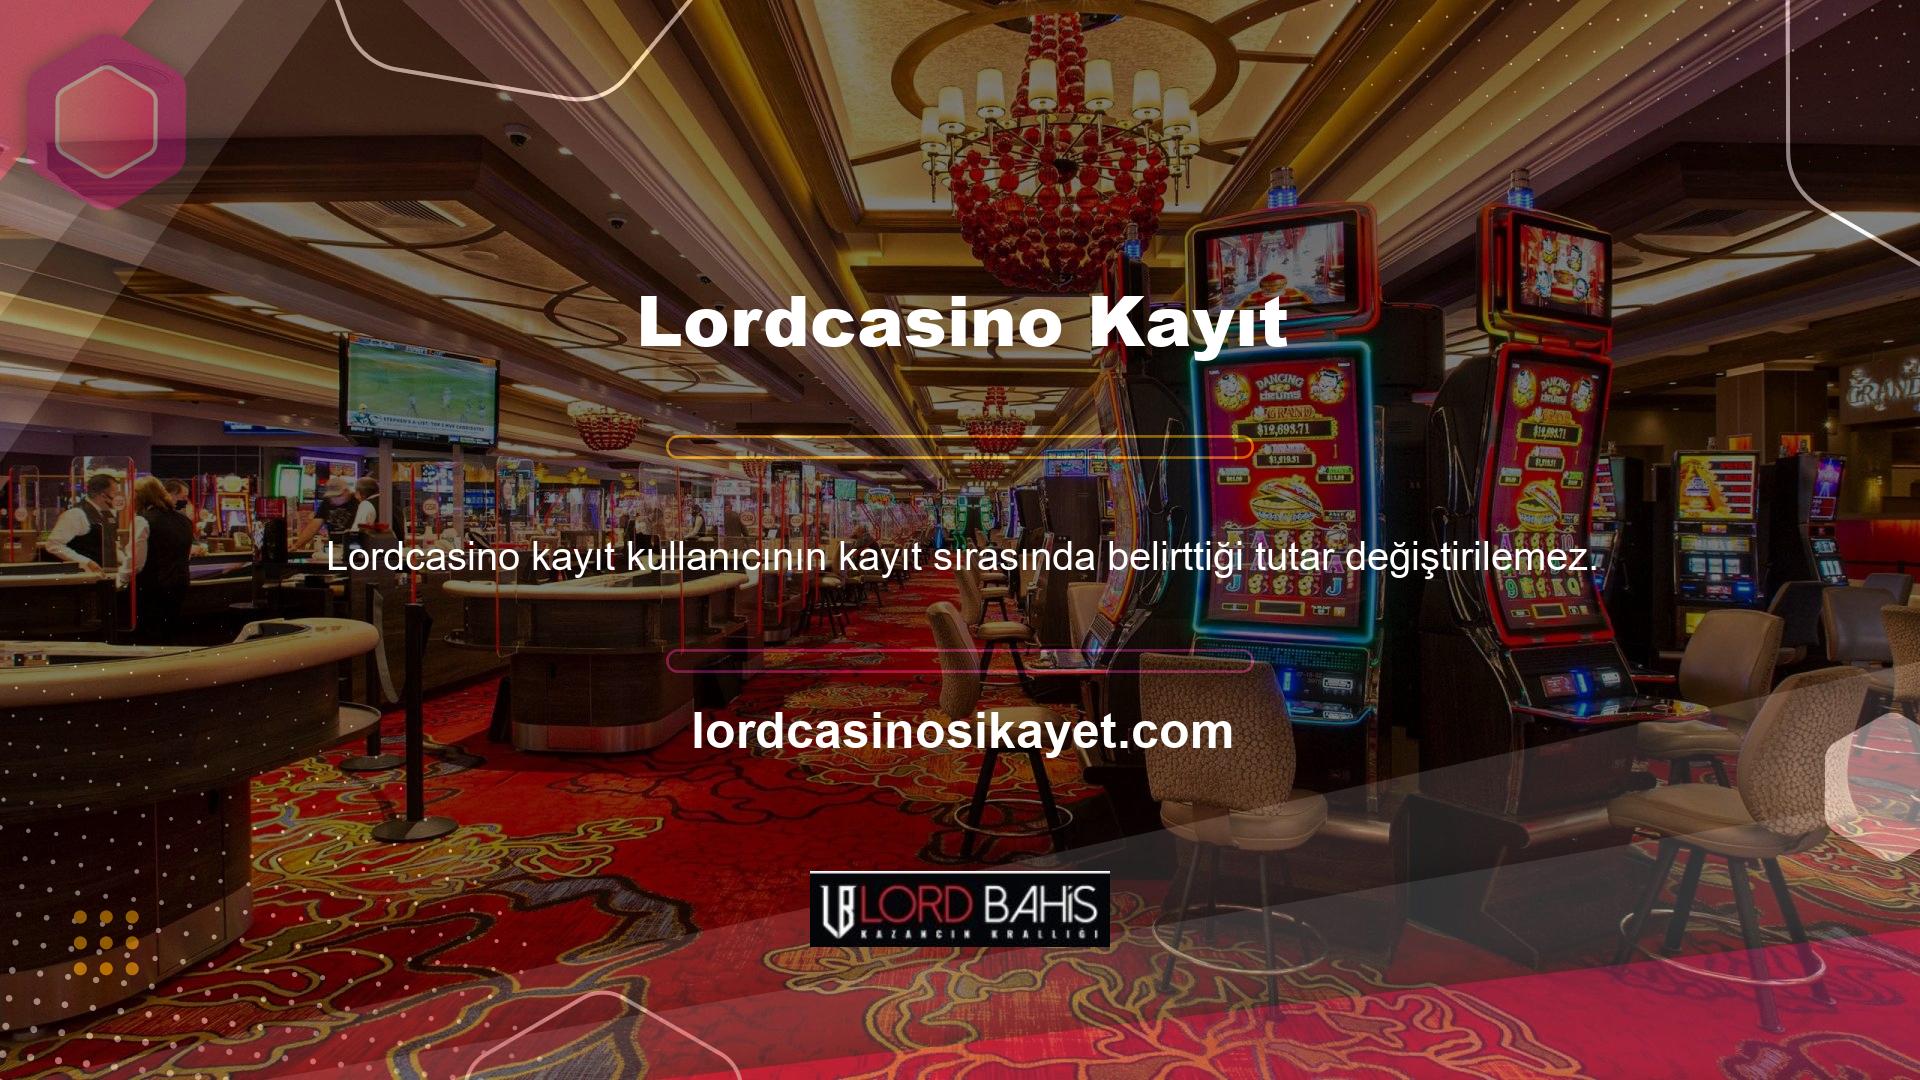 Lordcasino Canlı Casino, ilk aşamada belirlenen değere bakılmaksızın site kullanımının tüm aşamalarında aynı değeri sağlar